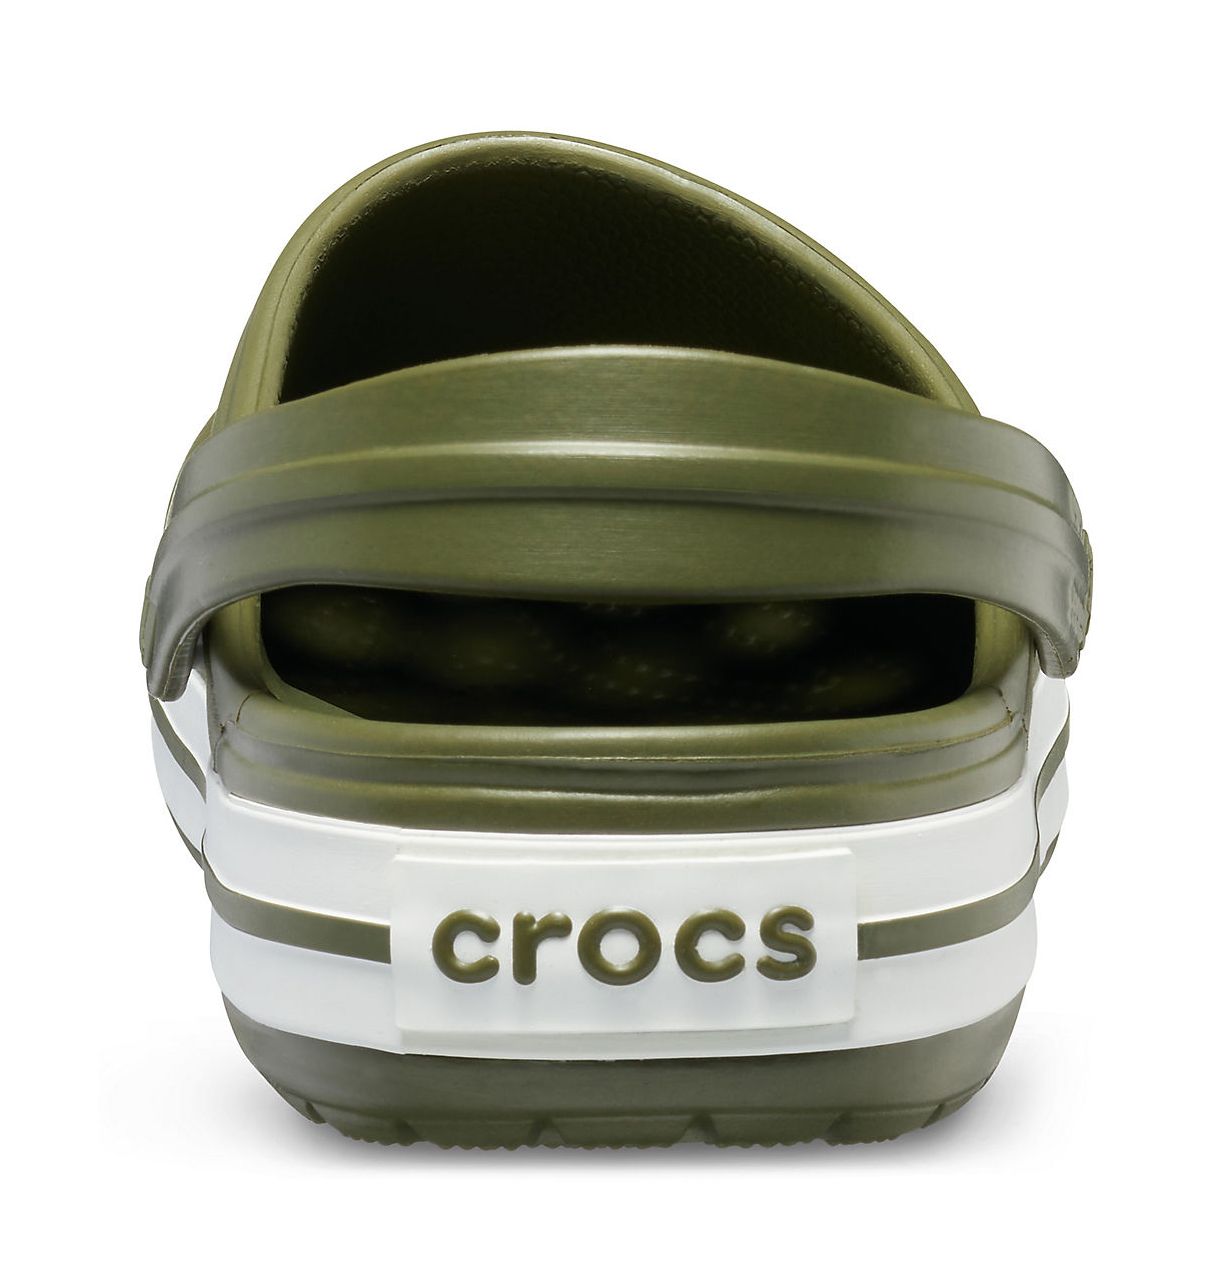 Купить crocs мужские оригинал. Crocs 11016. Crocs Crocband Clog. Crocs Crocband Army Green. Crocs Crocband цвета хаки.